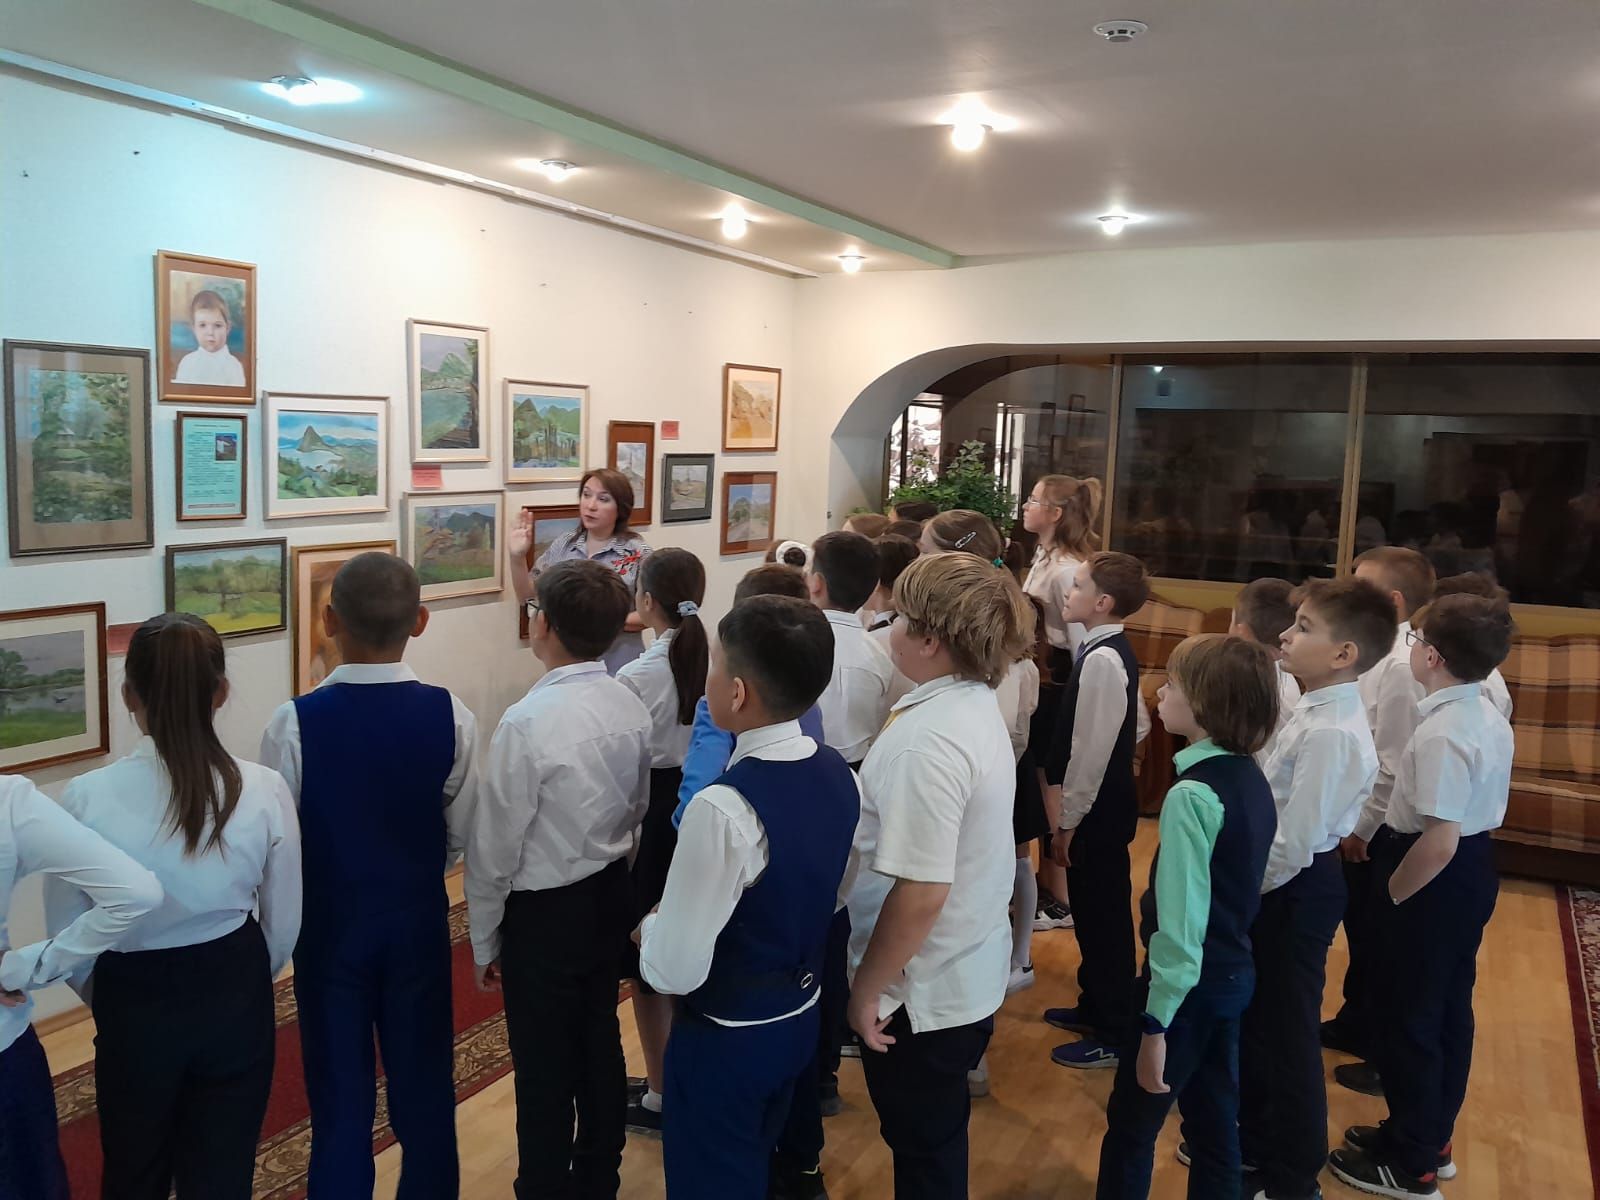 Выставка картин Сергея Коновалова в Нурлатском музее завершила свою работу